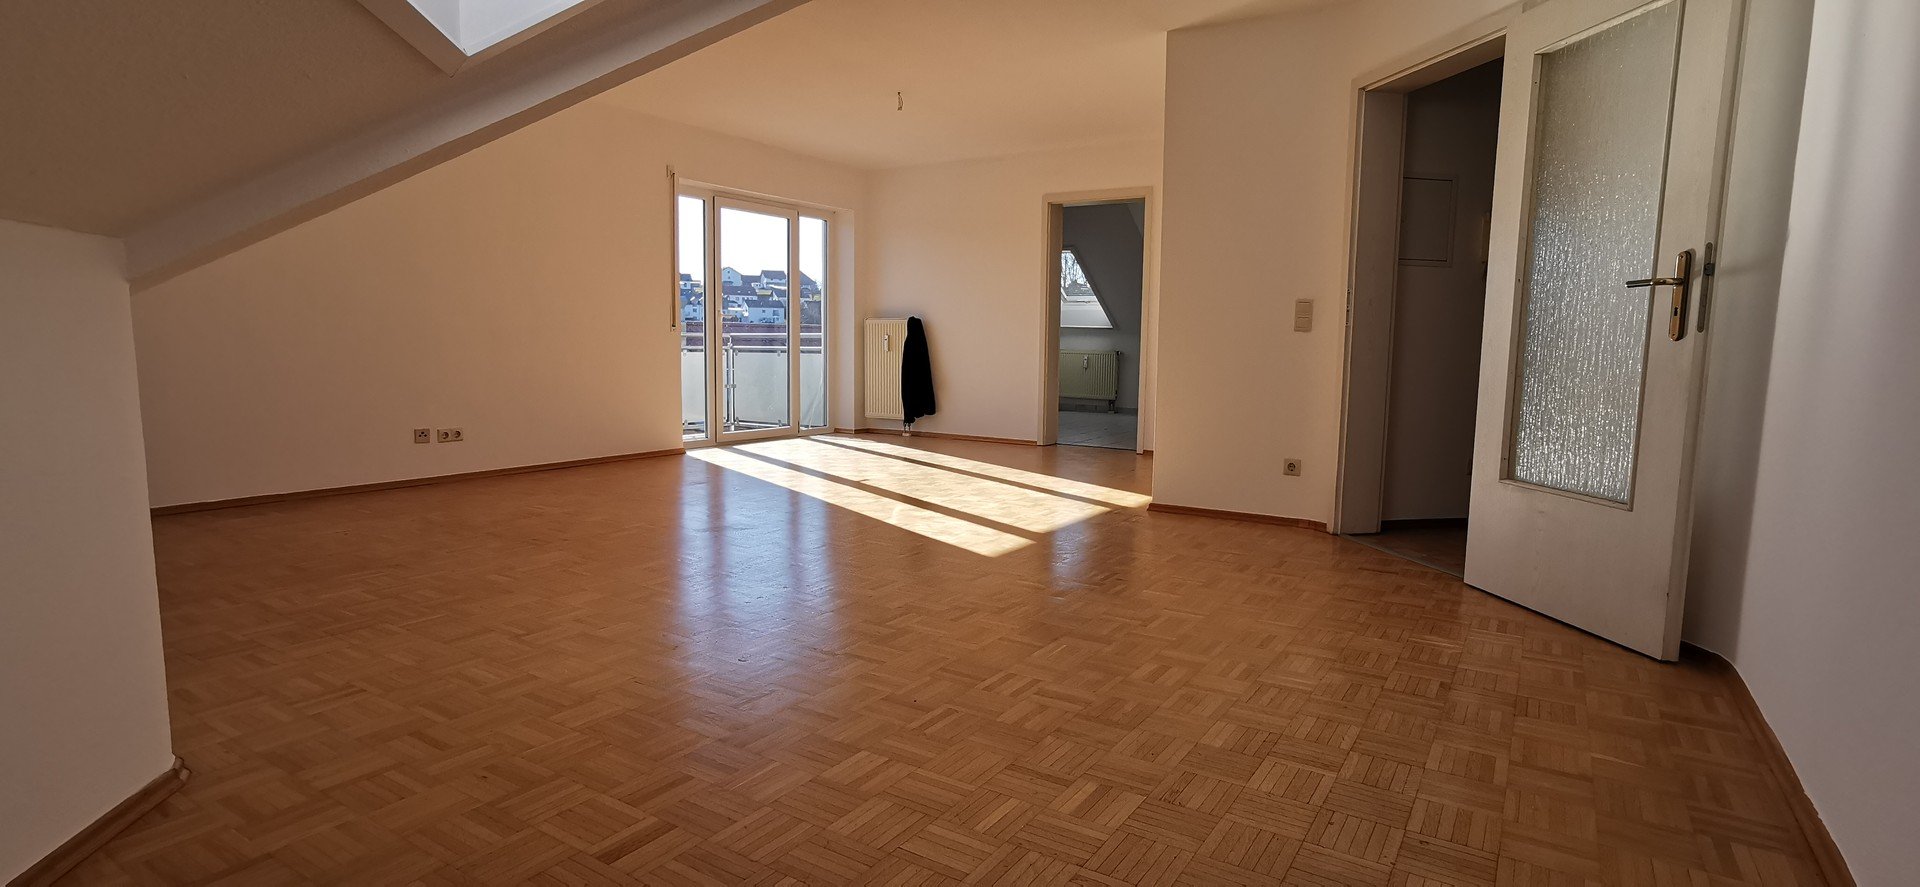 Helle und großzügige 2-Zimmer-Wohnung in Passau Rittsteig/Neustift ---provisionsfrei---